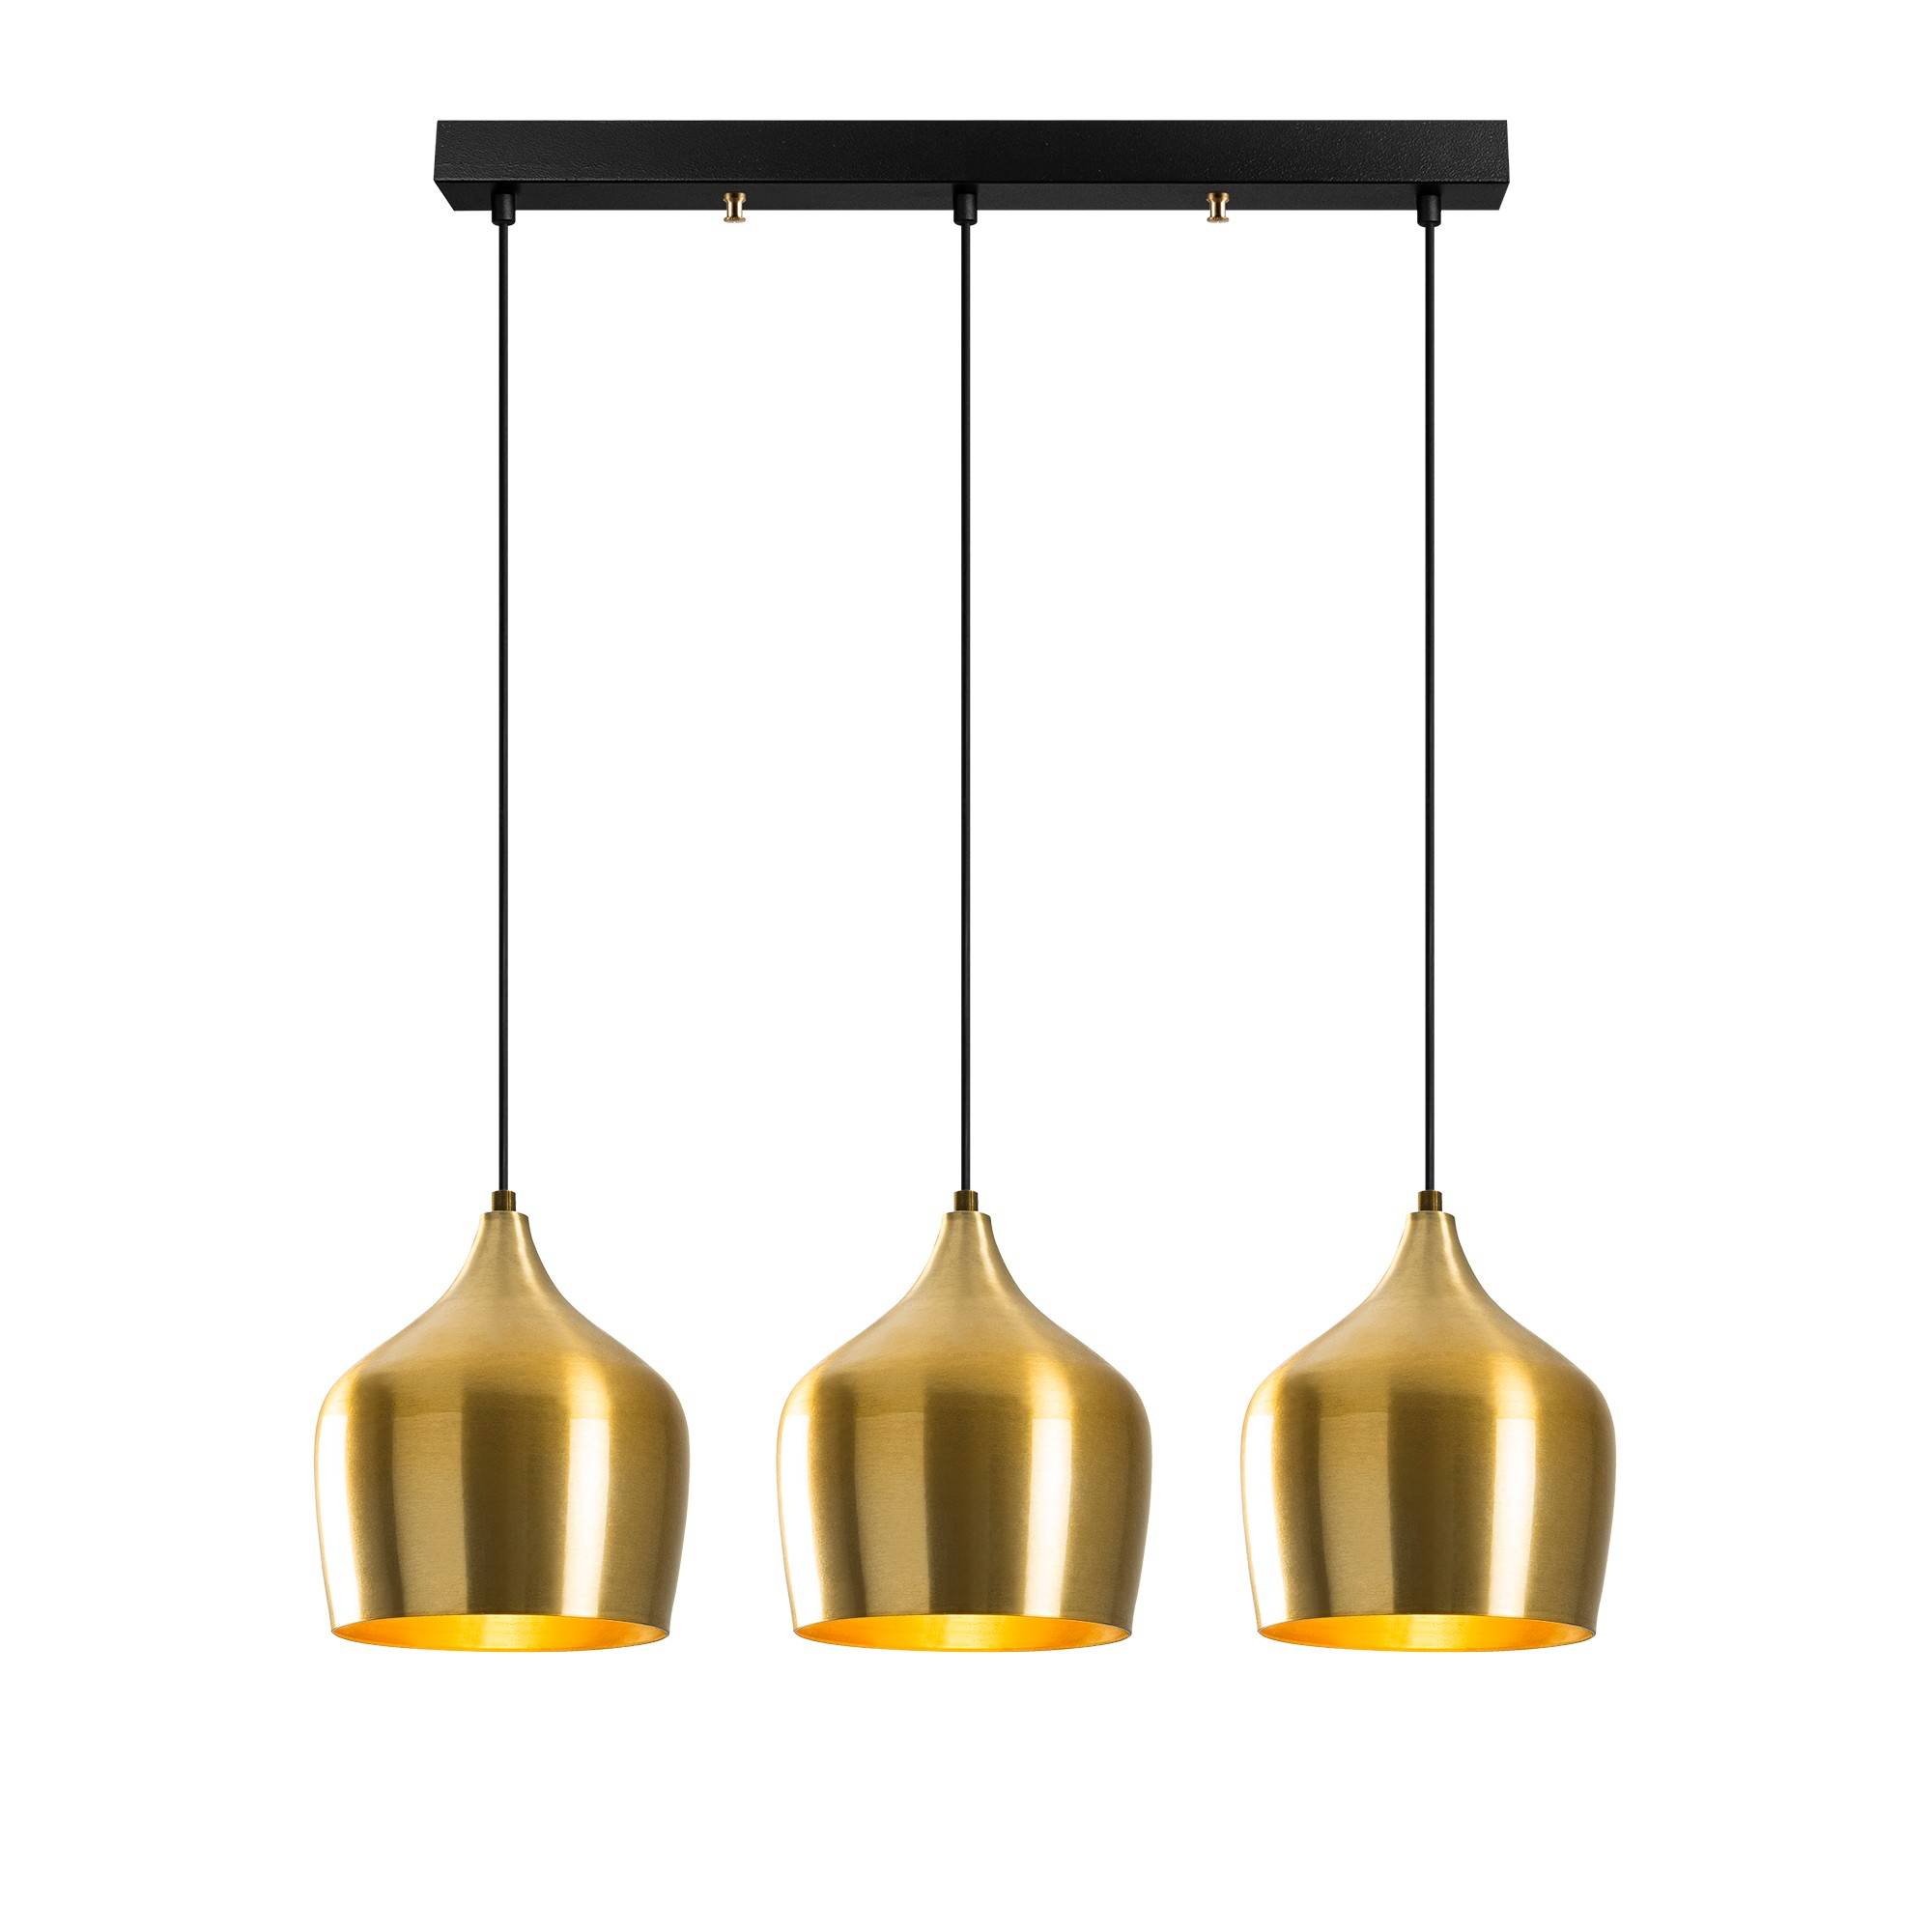 Hänge-/Deckenleuchte 3 geodätische Reflektoren in einer Reihe Tropaeum Goldenes Metall